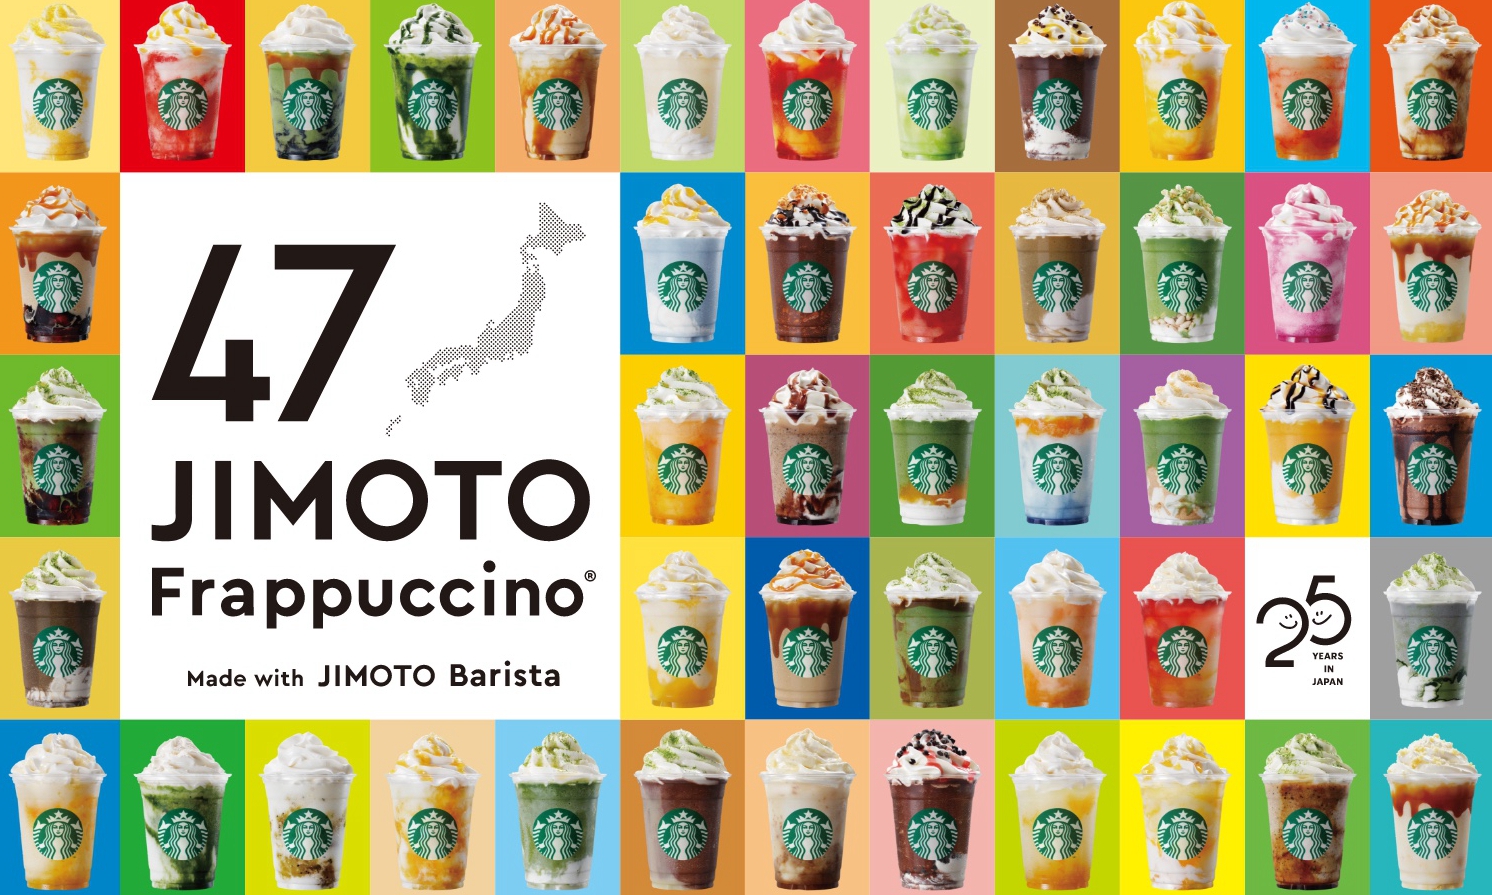 星巴克推出日本地区限定特饮「47 JIMOTO Frappuccino®」